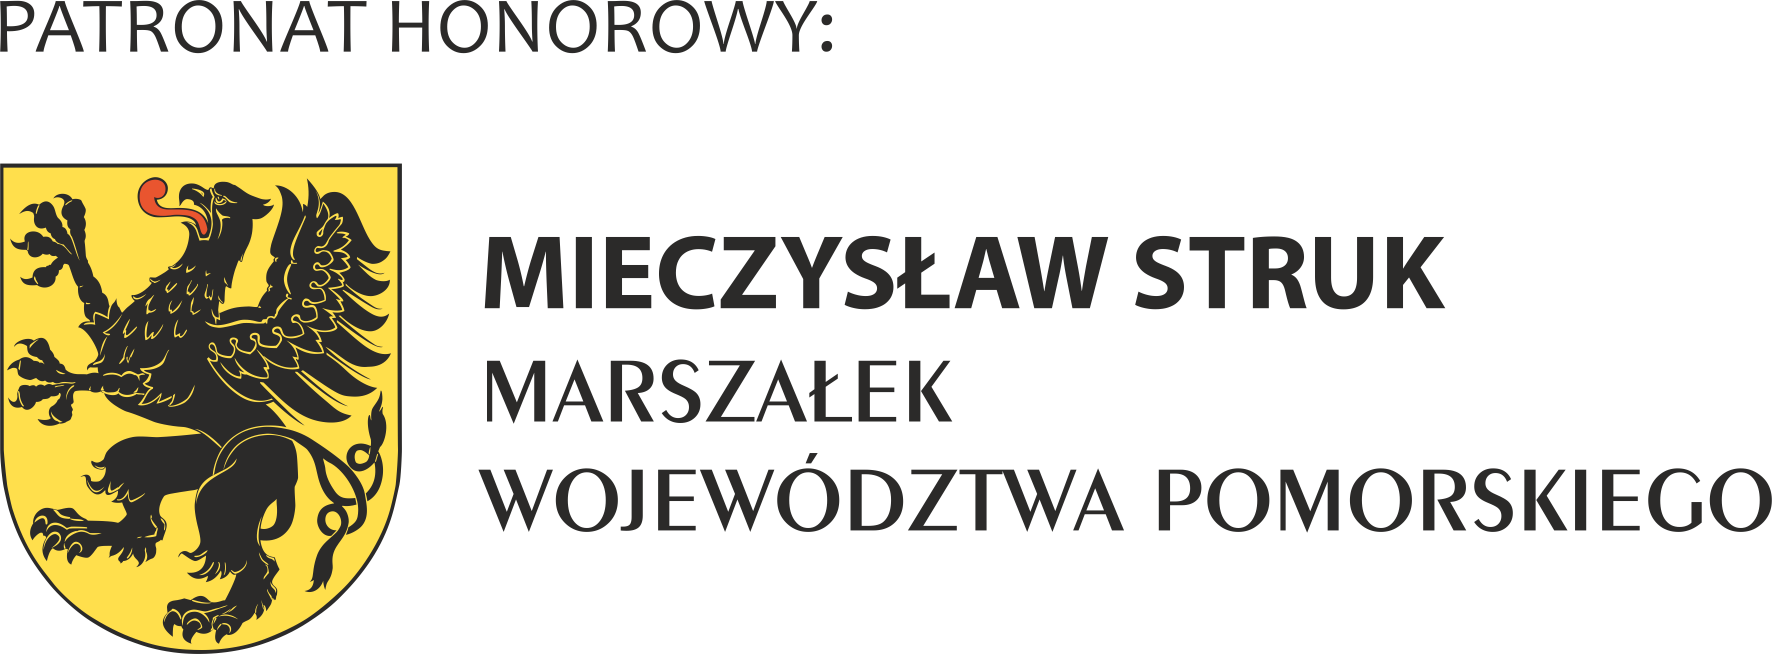 PATRONAT HONOROWY-MARSZALEK WOJEWODZTWA POMORSKIEGO-poziom-prawa RGB-ONLY FOR WEB-2012